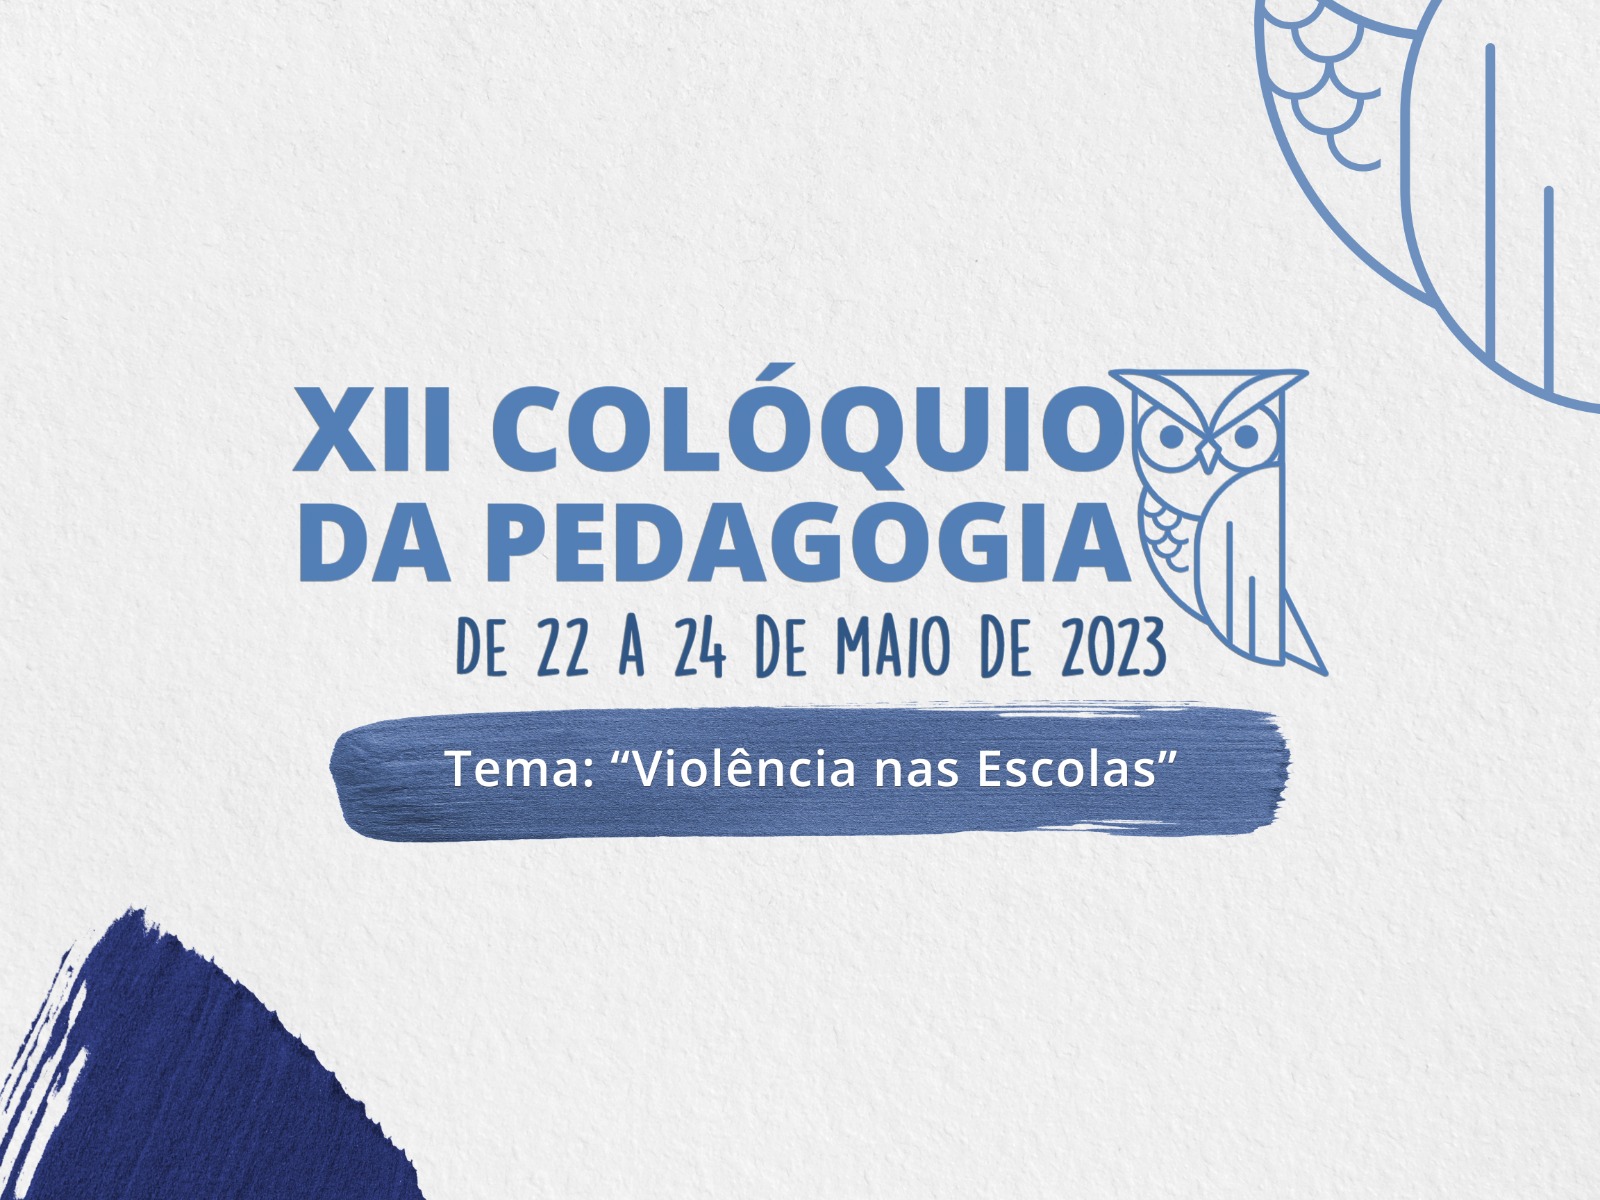 Colóquio da Pedagogia acontece entre os dias 22 e 24 de maio no UNIFEB e discutirá sobre “Violência nas Escolas”